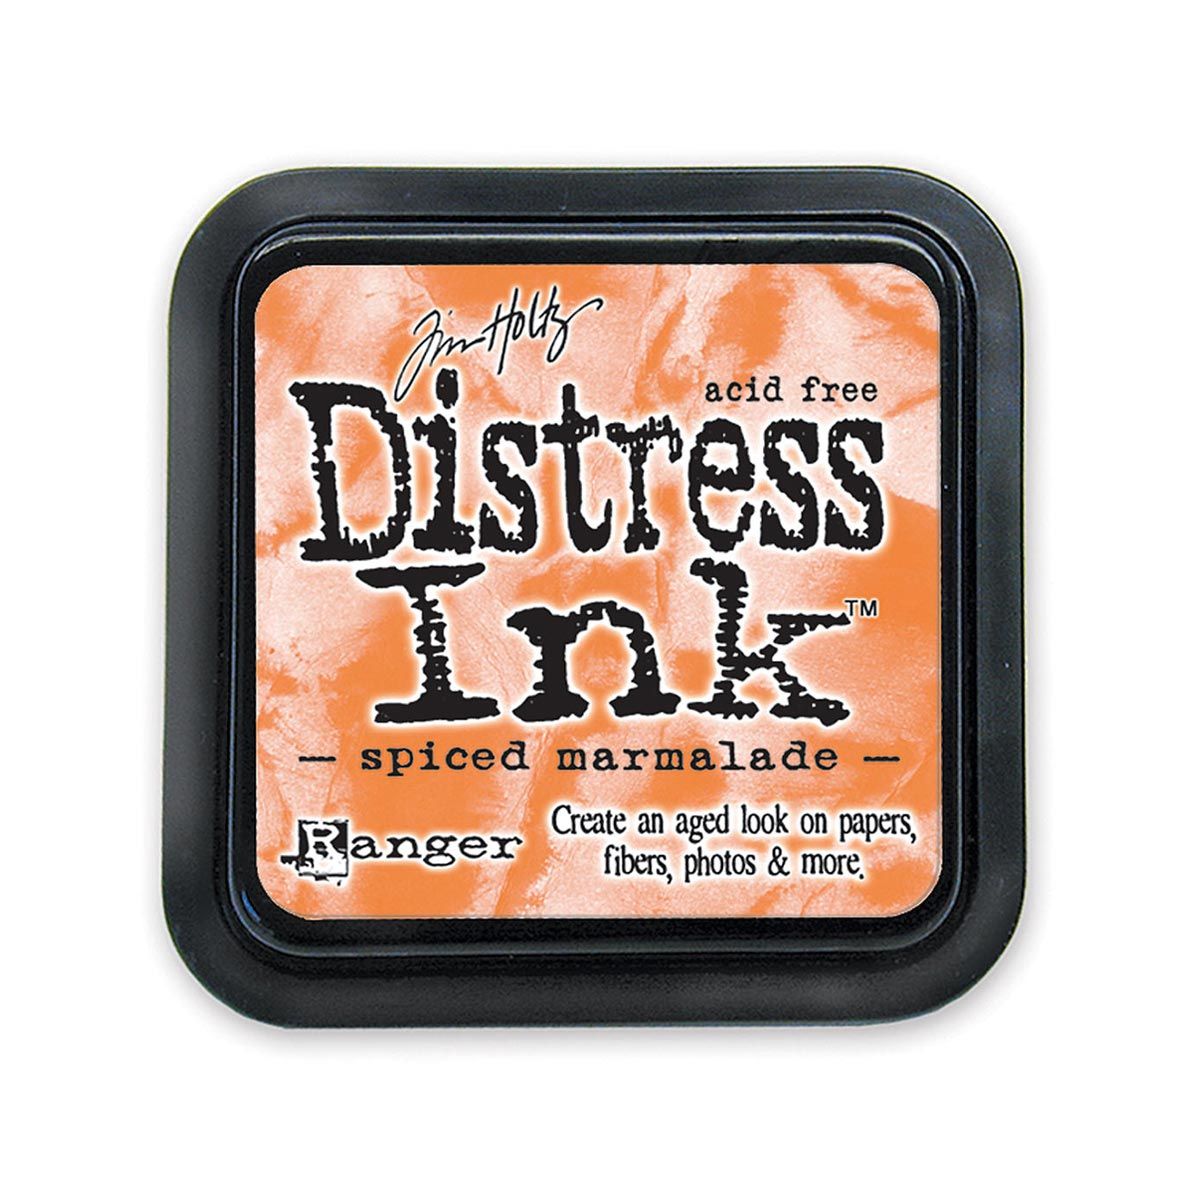 Tim Holtz Mini Distress Ink Pad, Spiced Marmalade 1x1-in